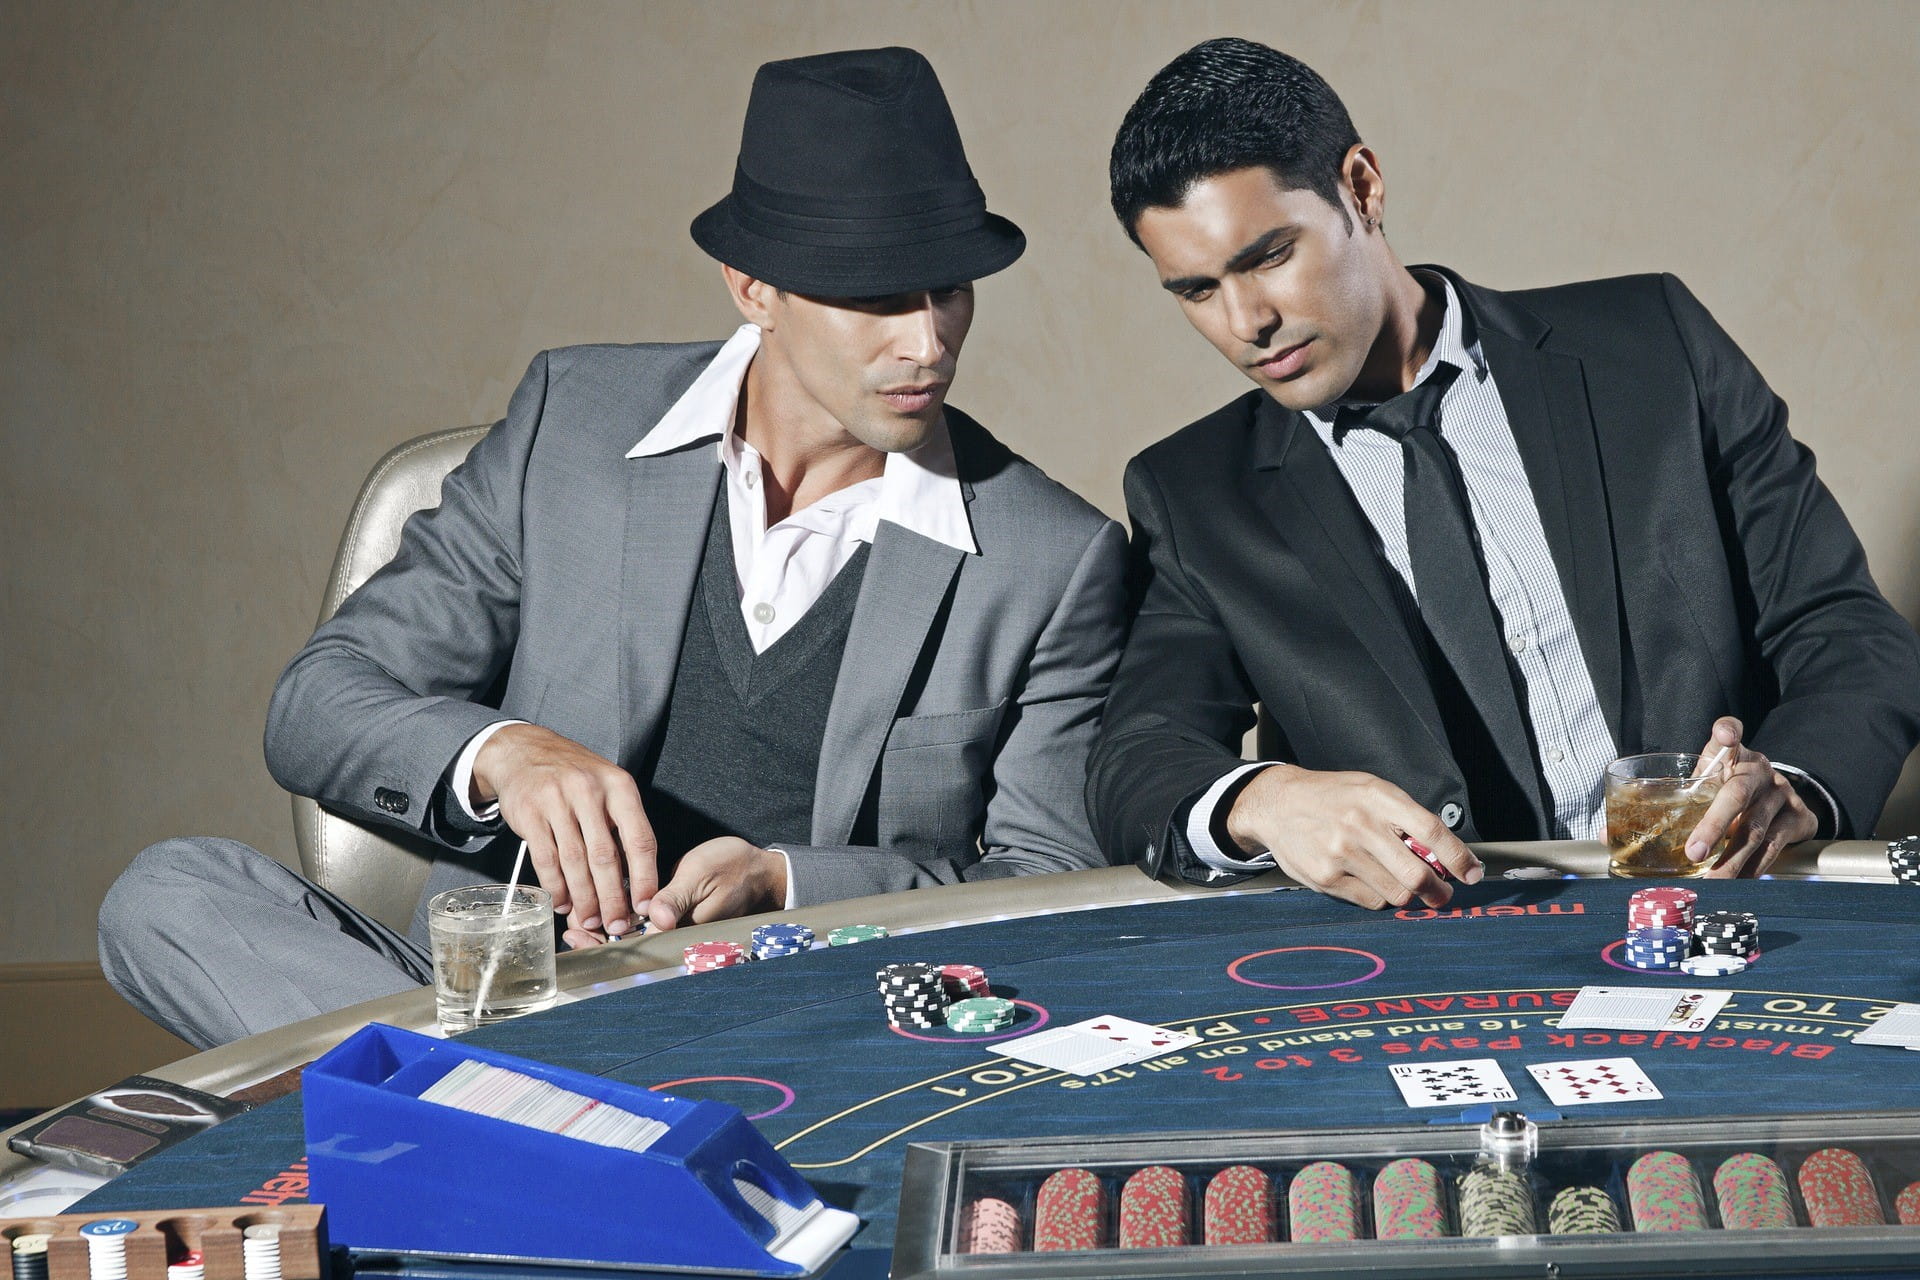 Zwei Männer im Anzug und Trinkgläsern sitzen an einem Pokertisch, auf dem Spielchips und einzelne Karten liegen.